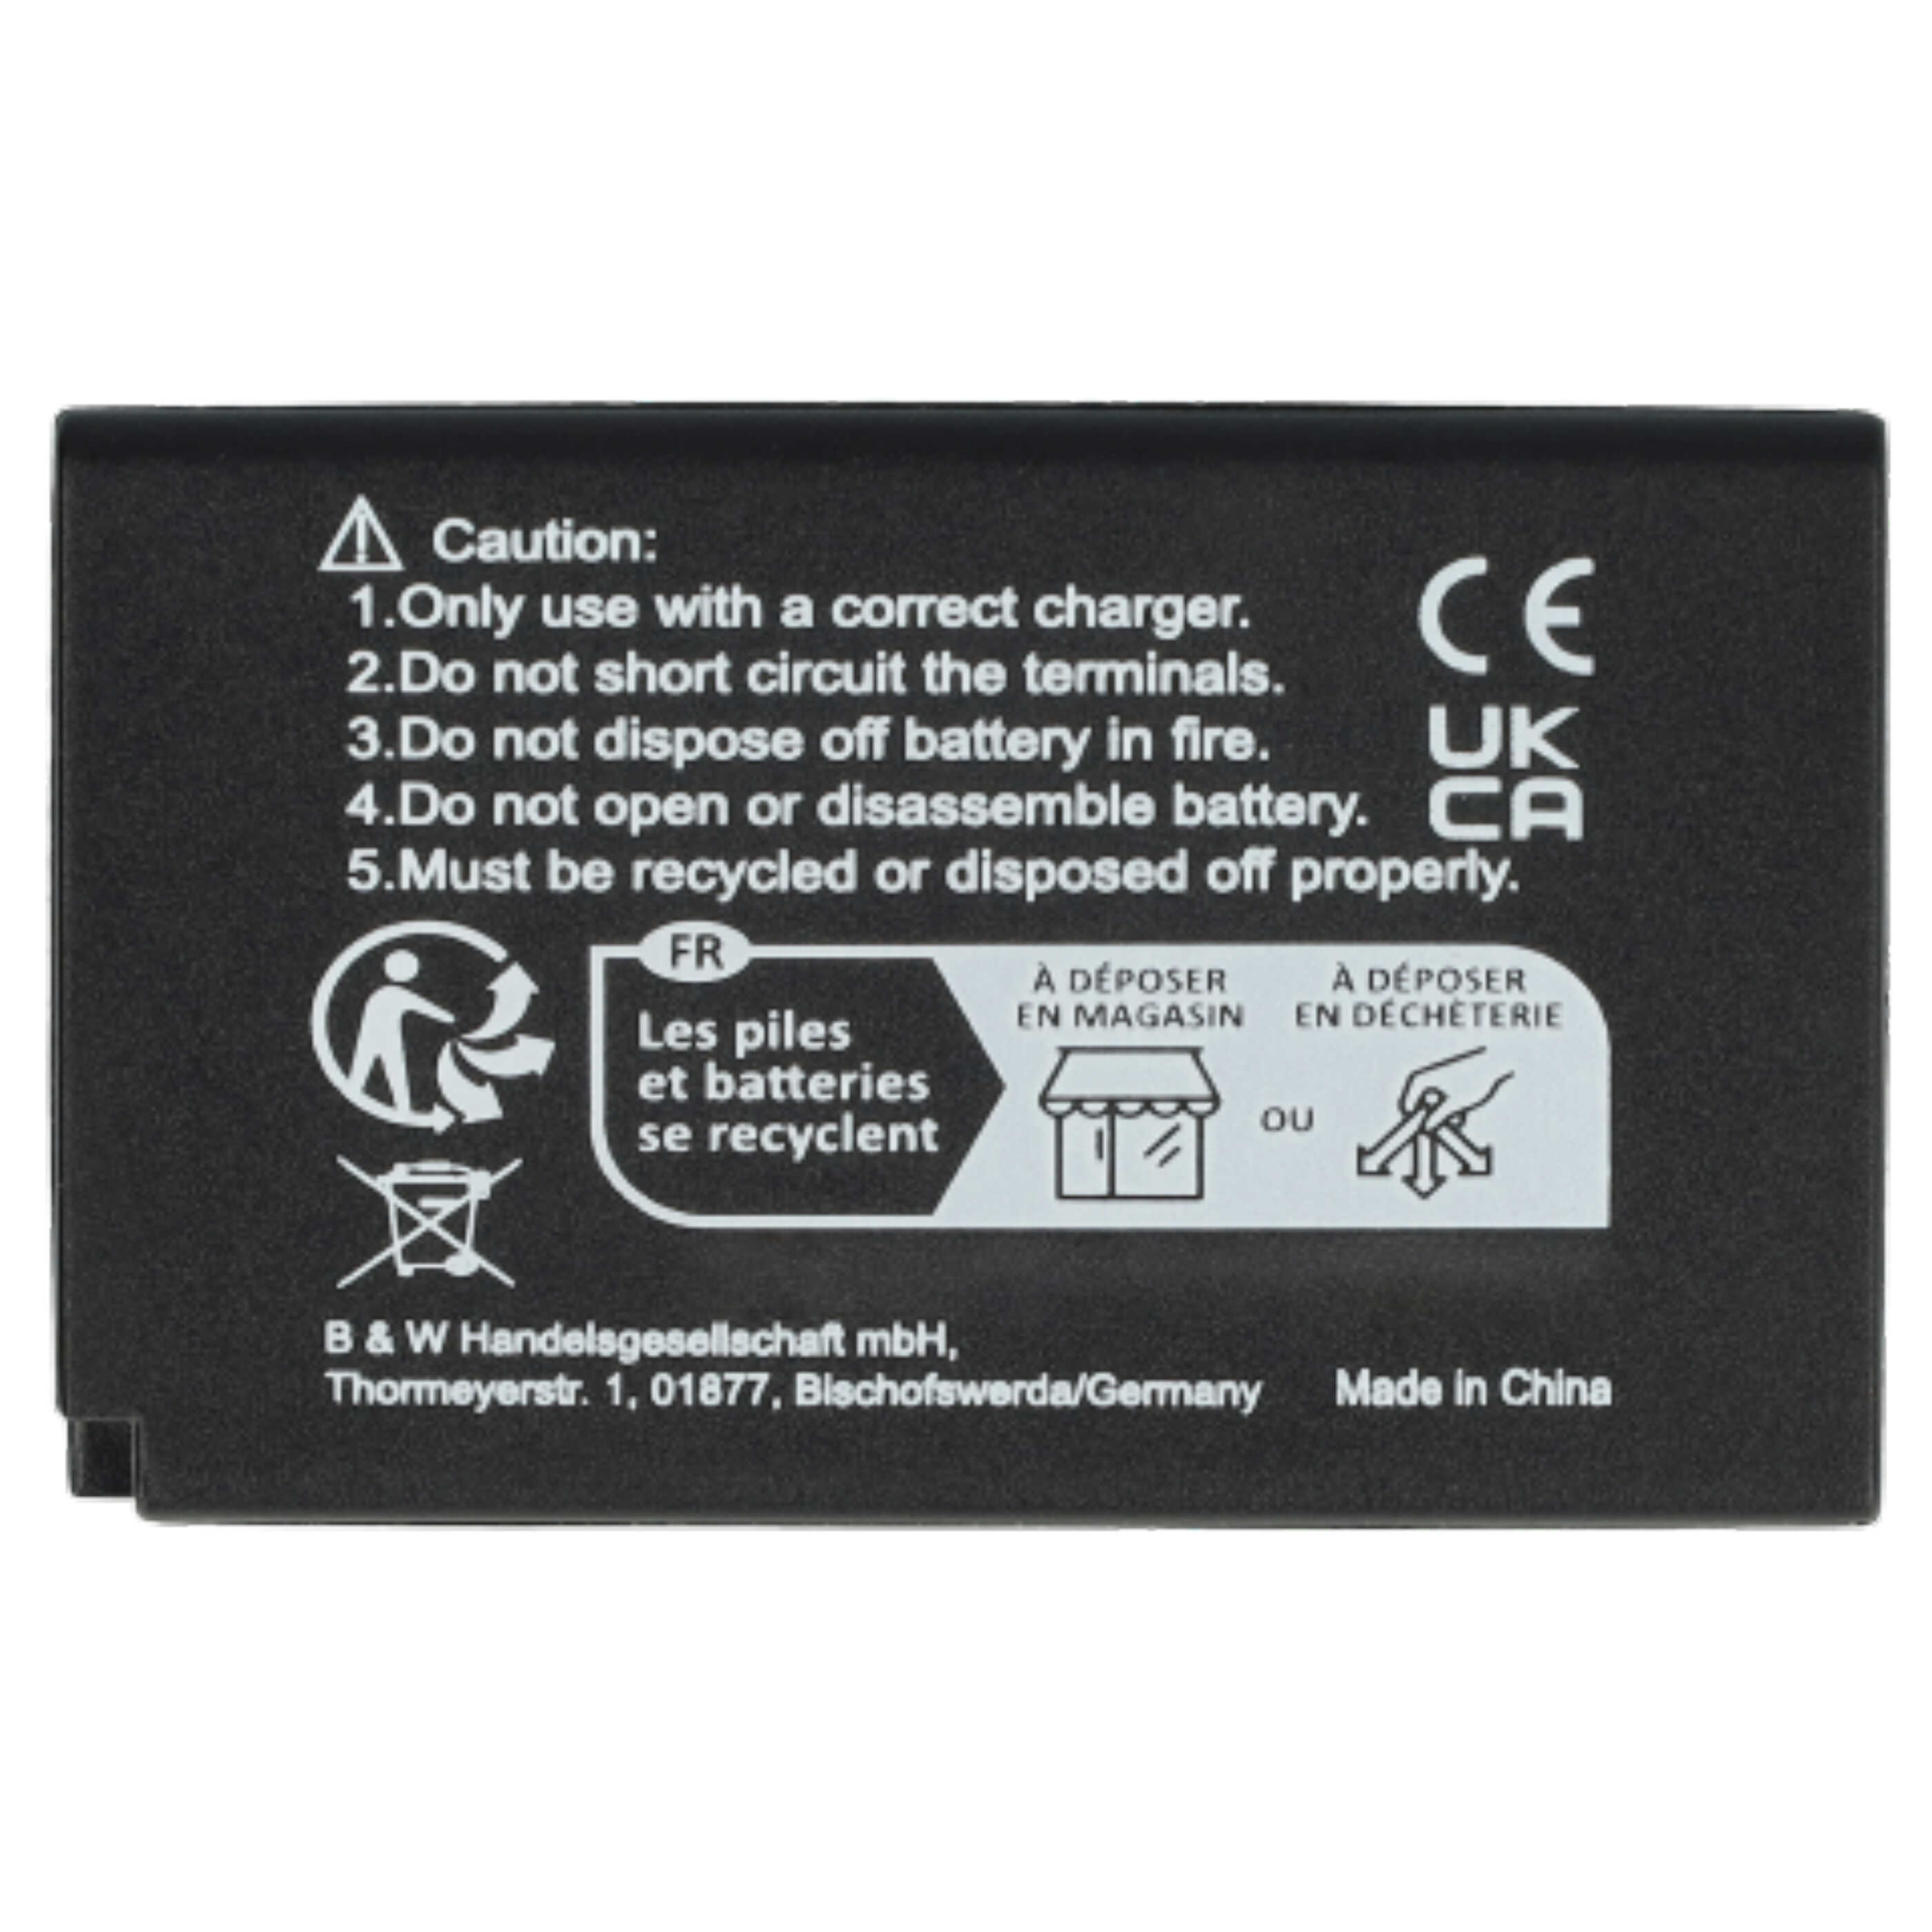 2x Akumulator do aparatu cyfrowego zamiennik Nikon EN-EL20, EN-EL20a - 850 mAh 7,4 V Li-Ion